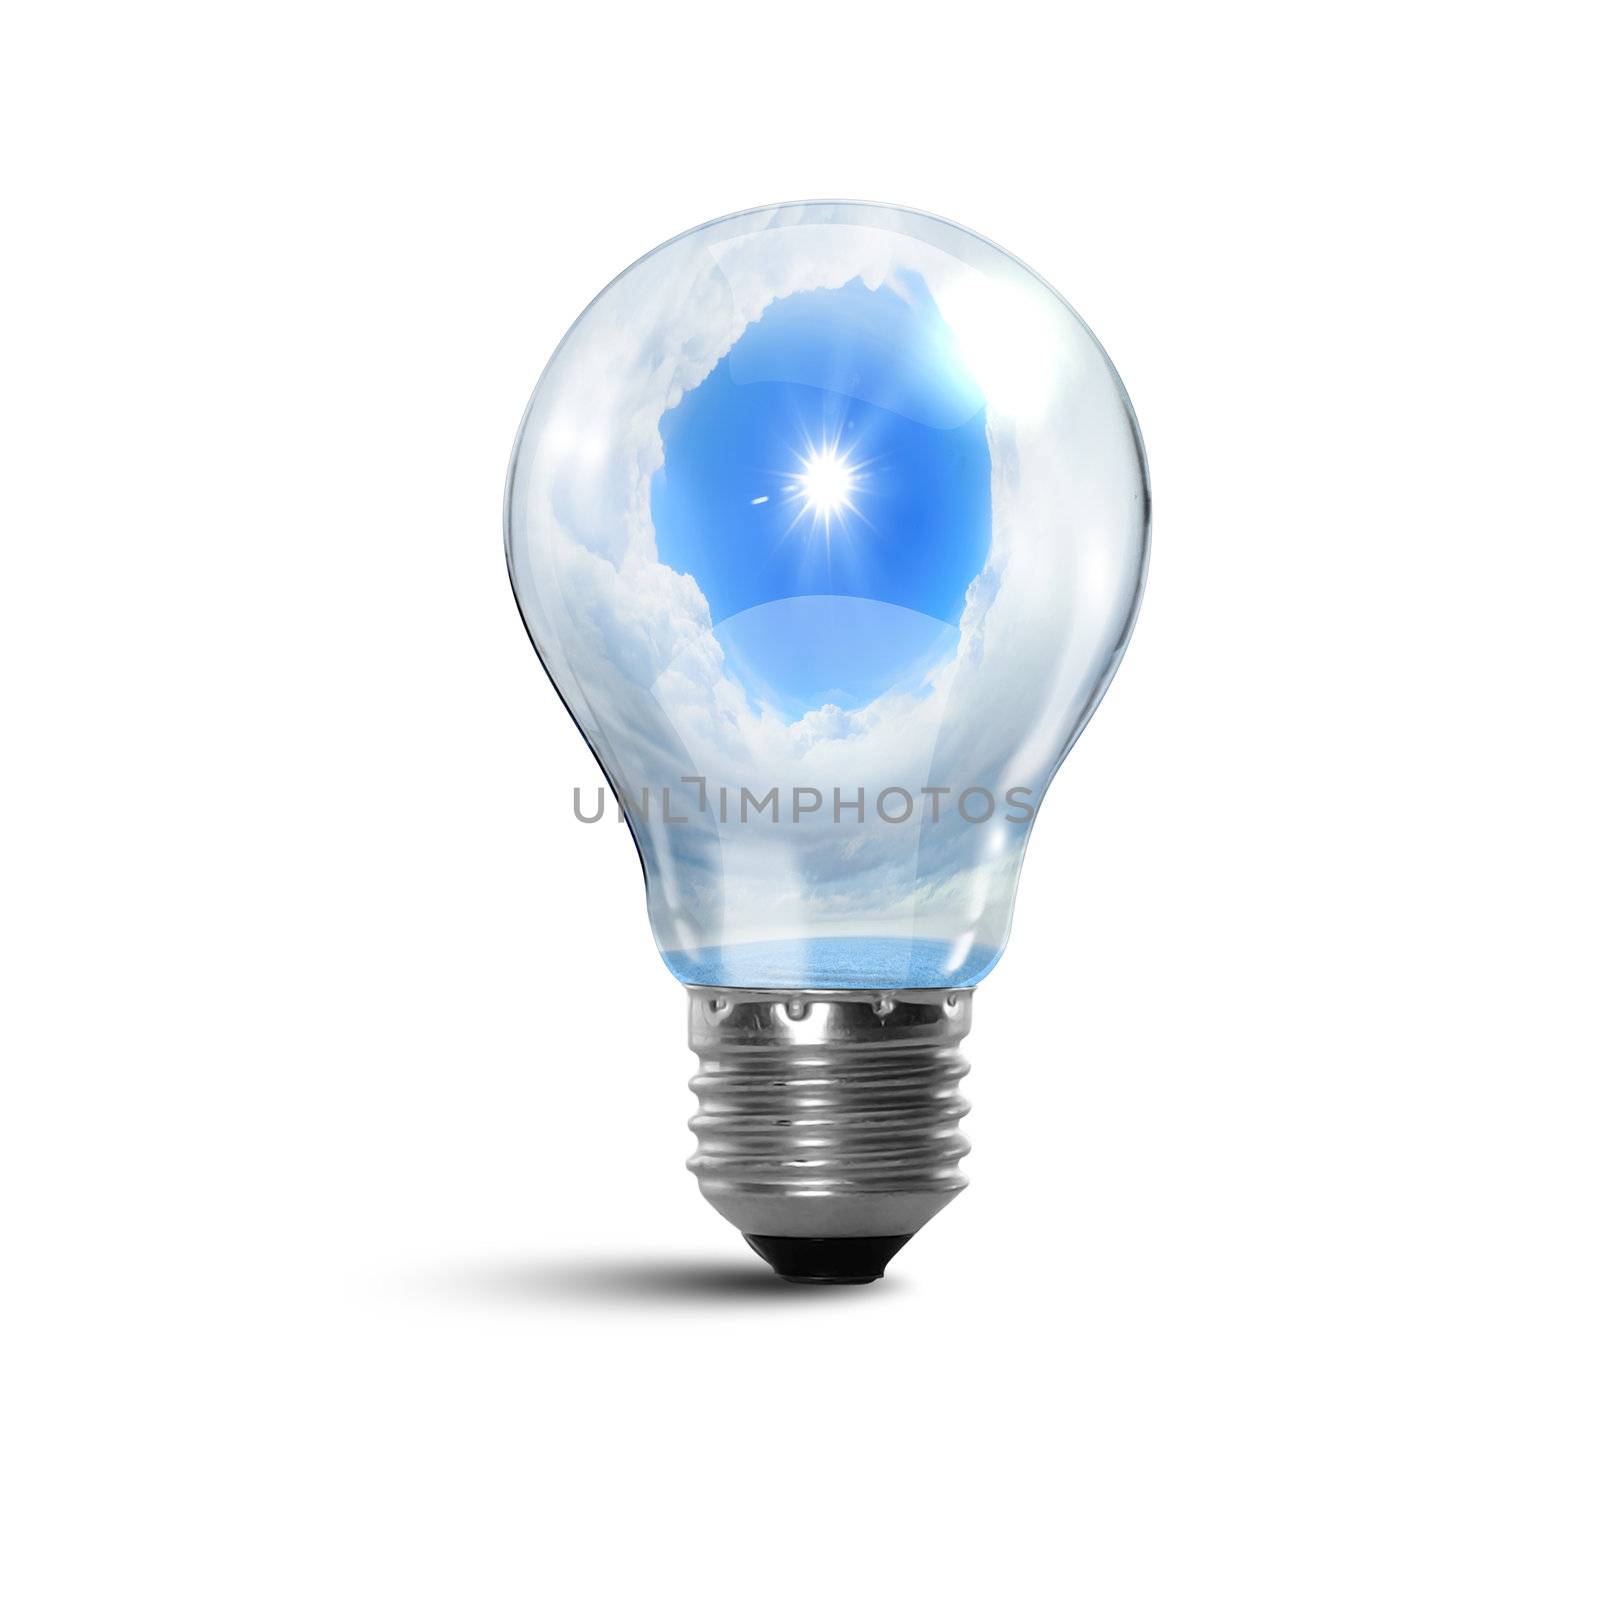 Ecology bulb light by sergey_nivens